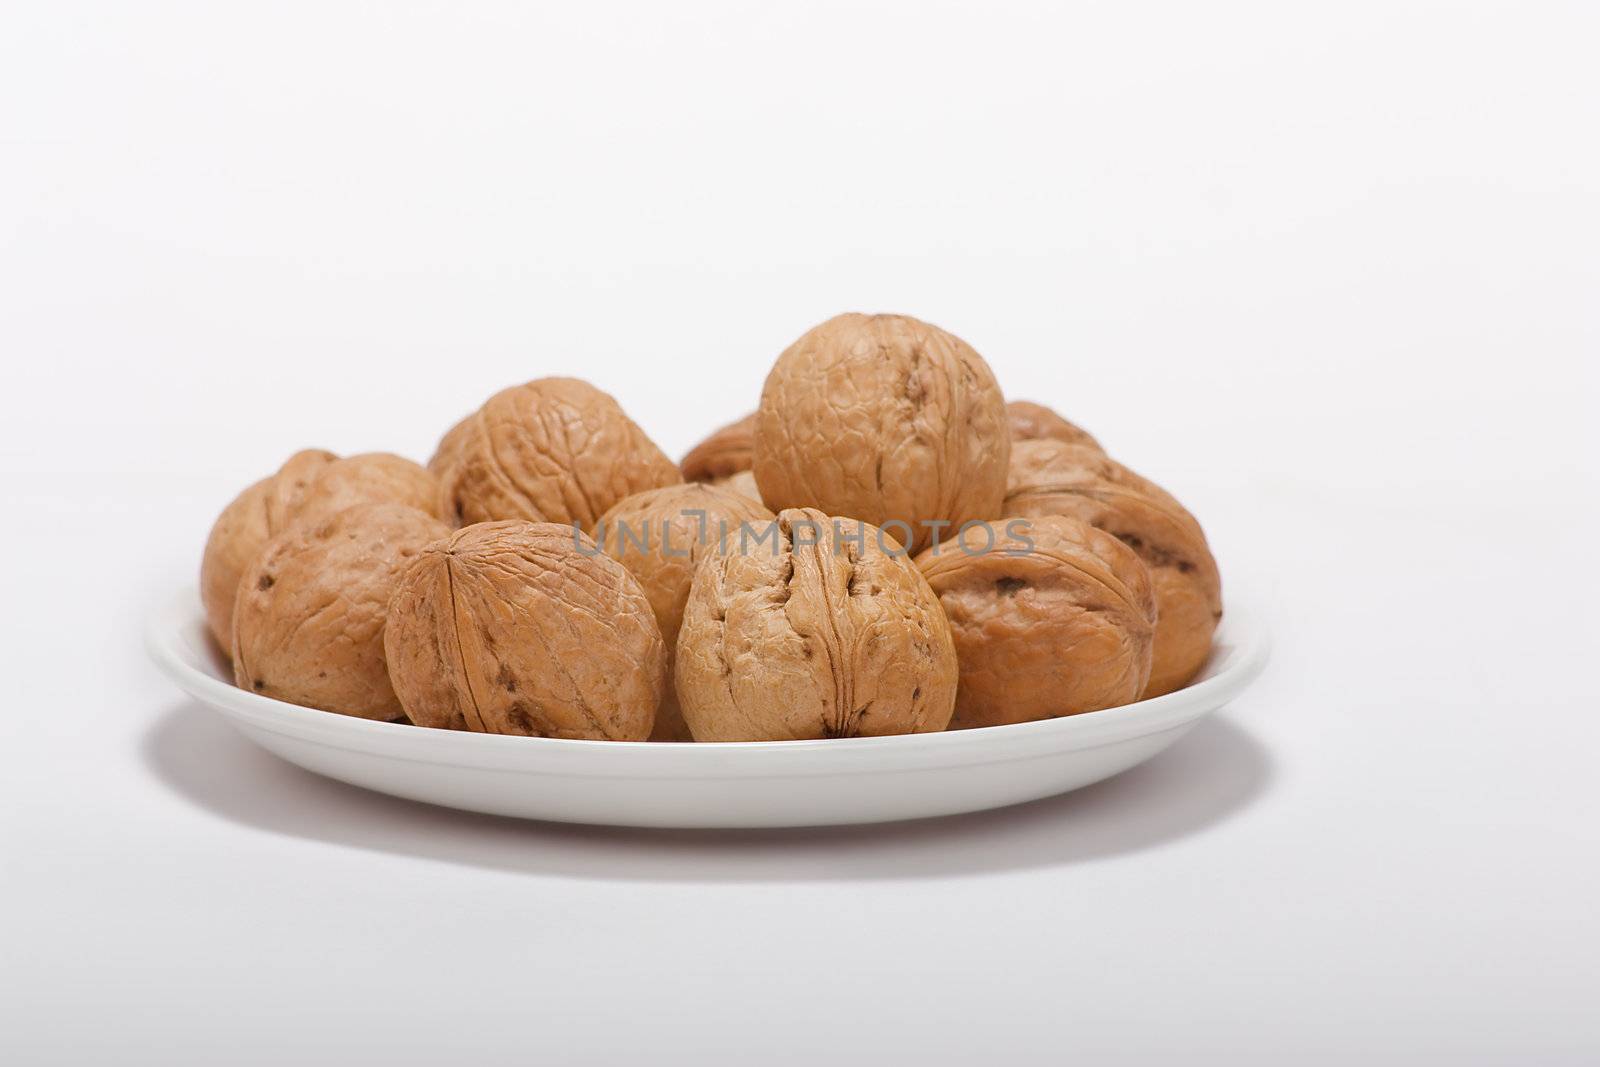 dry walnut fruit studio isolated close-up